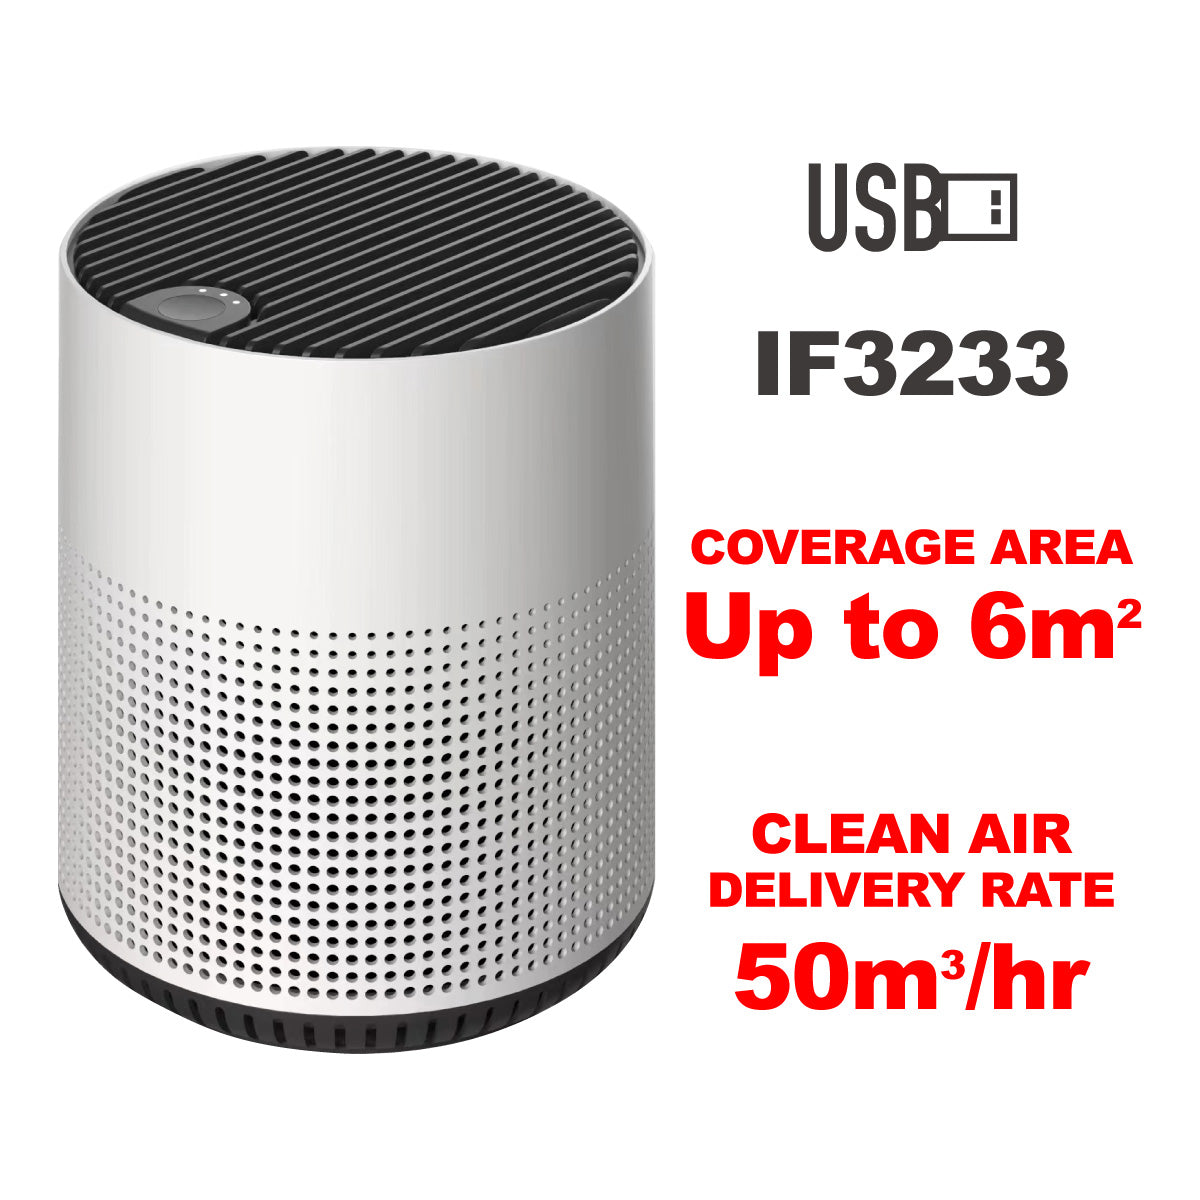 Air purifier HEPA filter, USB Air Purifier, Desk Top Air Purifier , Mini Air Purifier(IF3233)